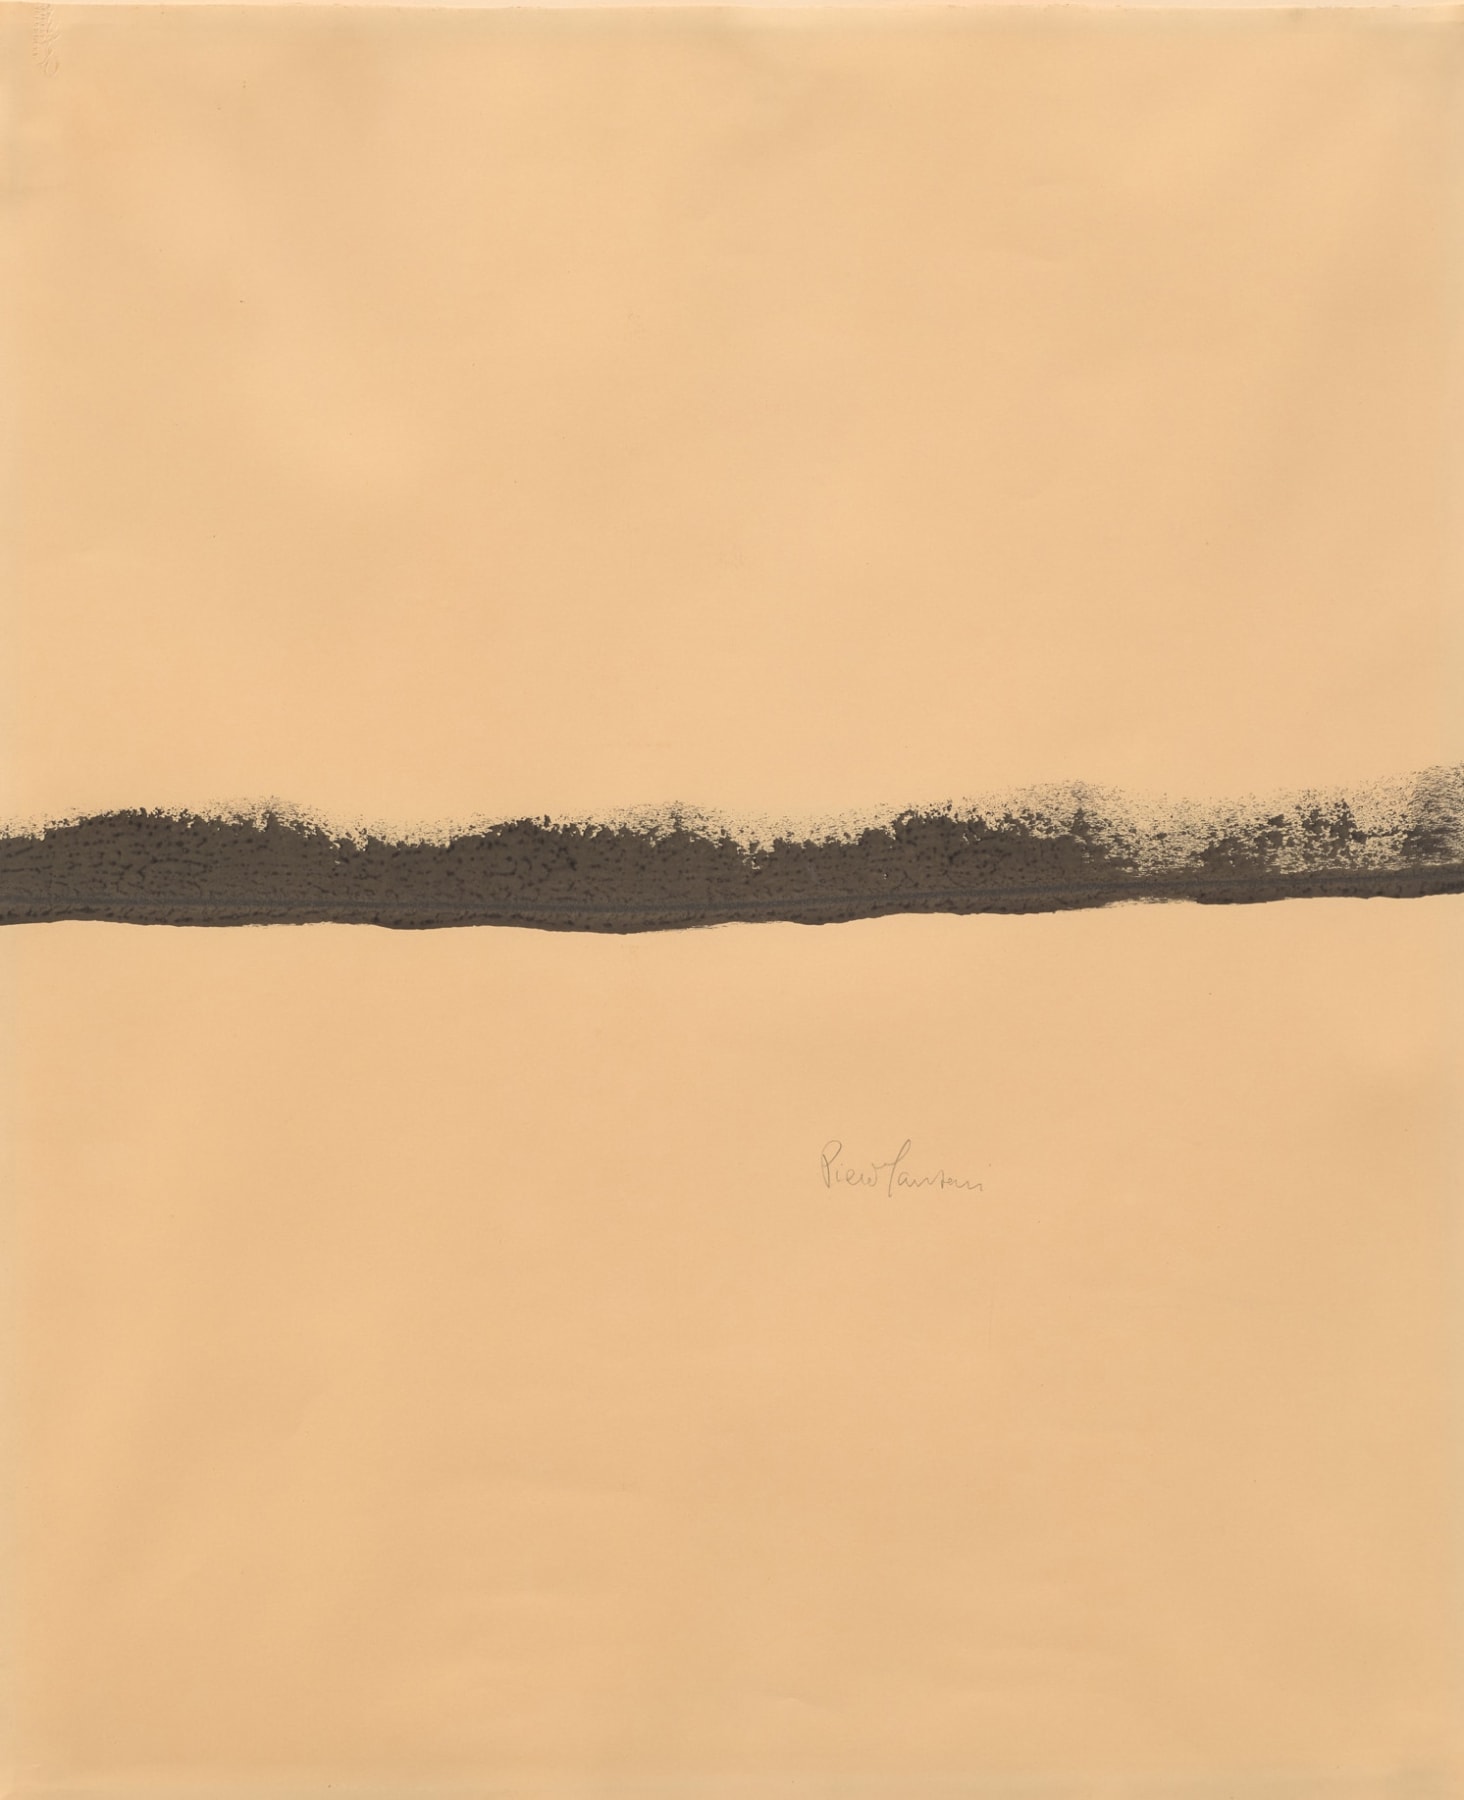 Piero Manzoni

&amp;ldquo;Linea&amp;rdquo;, 1960

Ink on paper

24 x 19 3/4 inches

61 x 50 cm

MAN 37

$275,000